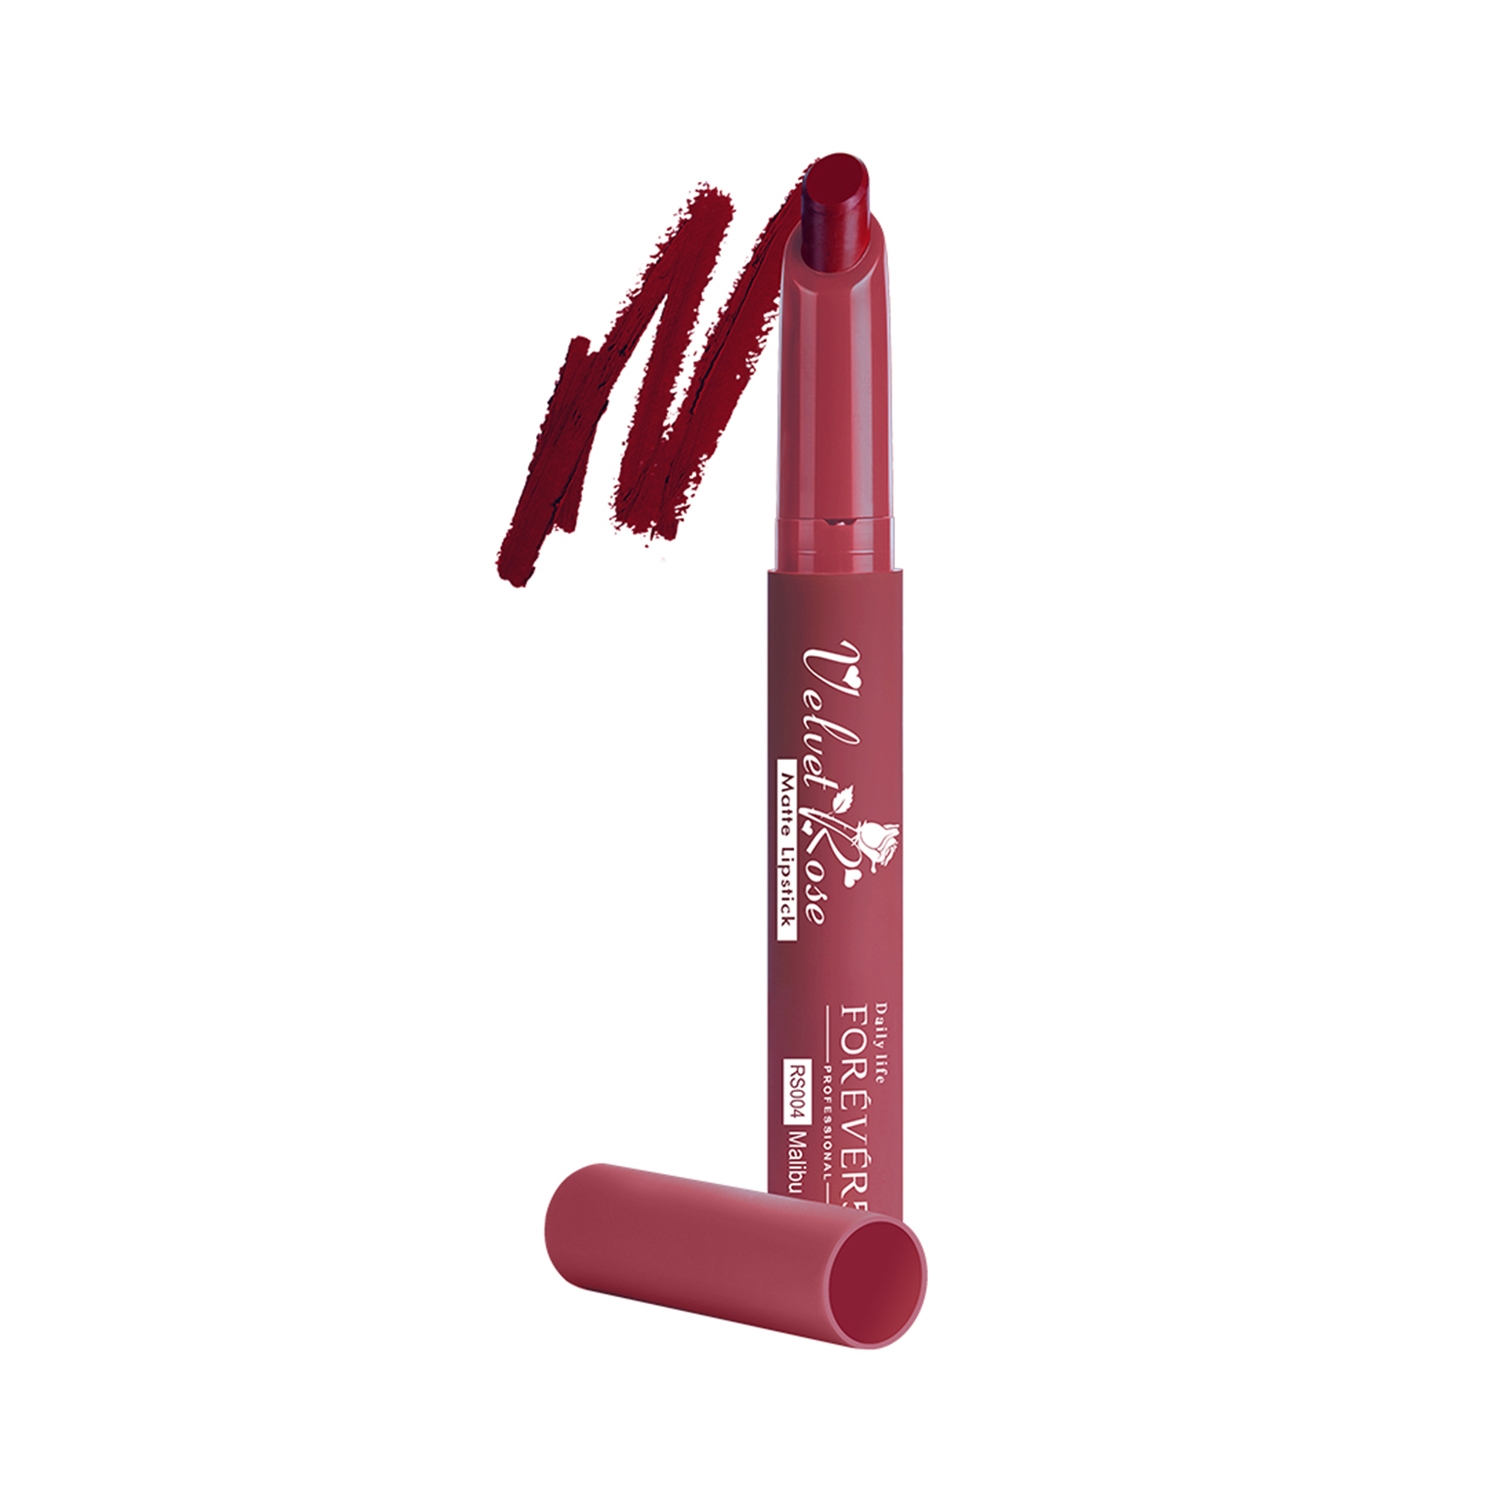 Daily Life Forever52 Velvet Rose Matte Lipstick RS004 - Malibu (2.5g)